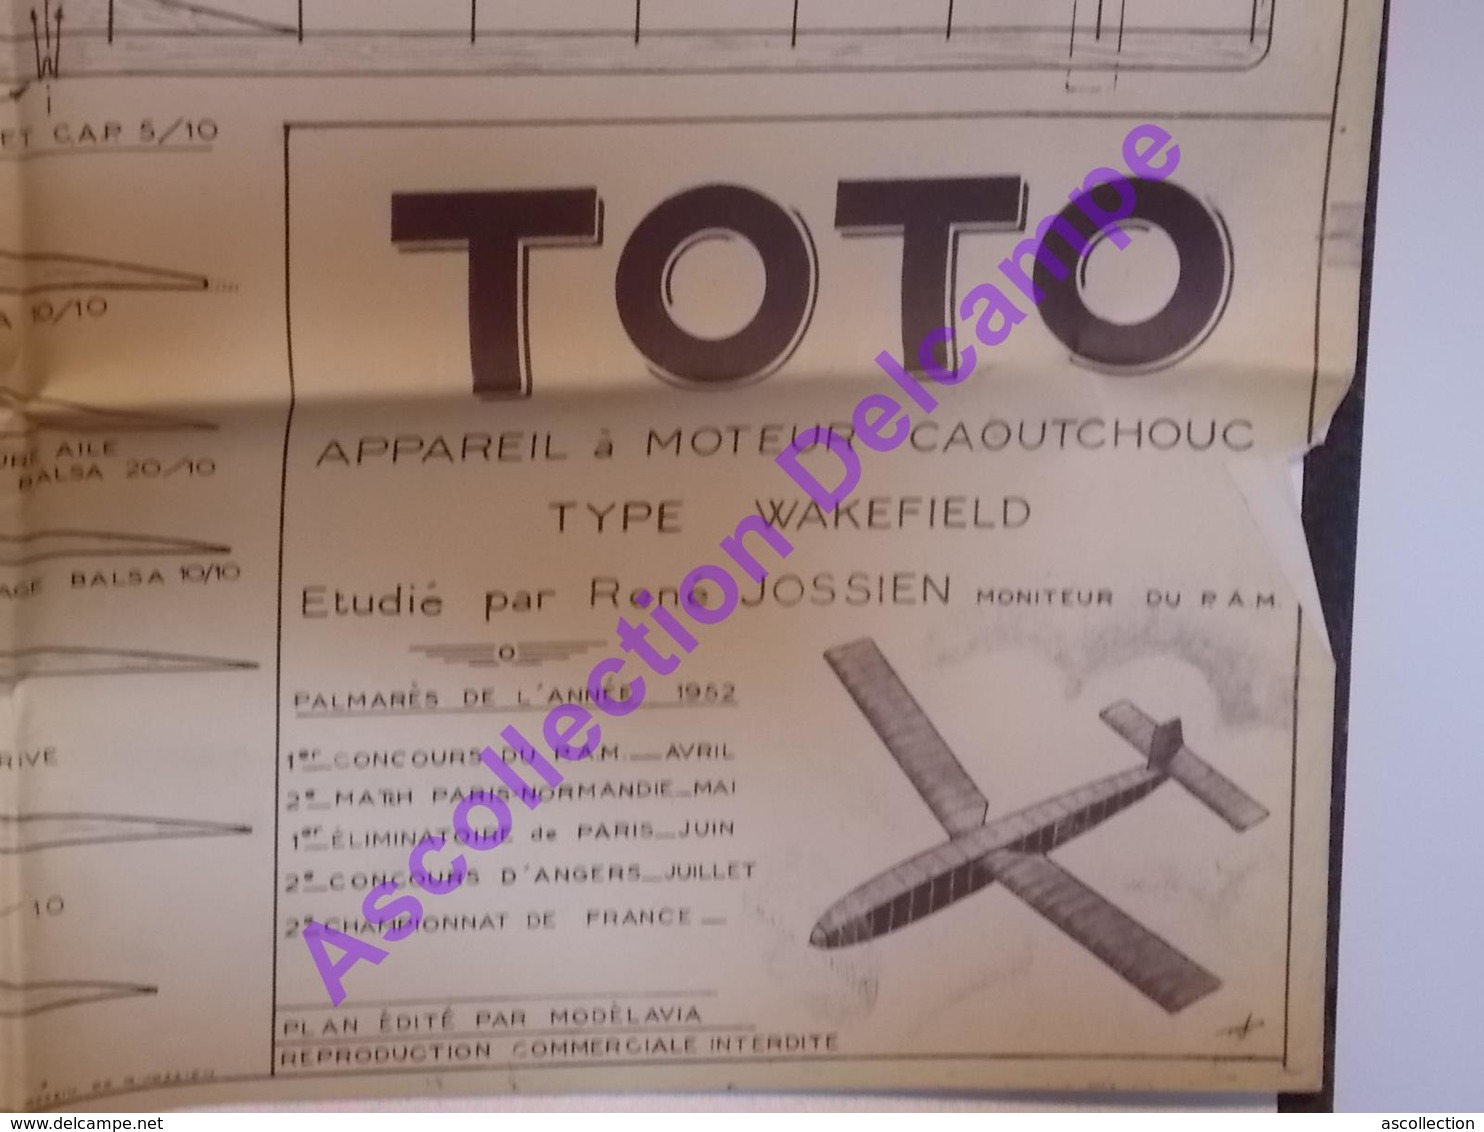 Plan Aeromodelisme Maquette Avion Planeur Le Toto Moteur Caoutchouc Wakefield 1952 PAM Modèlavia - Avions